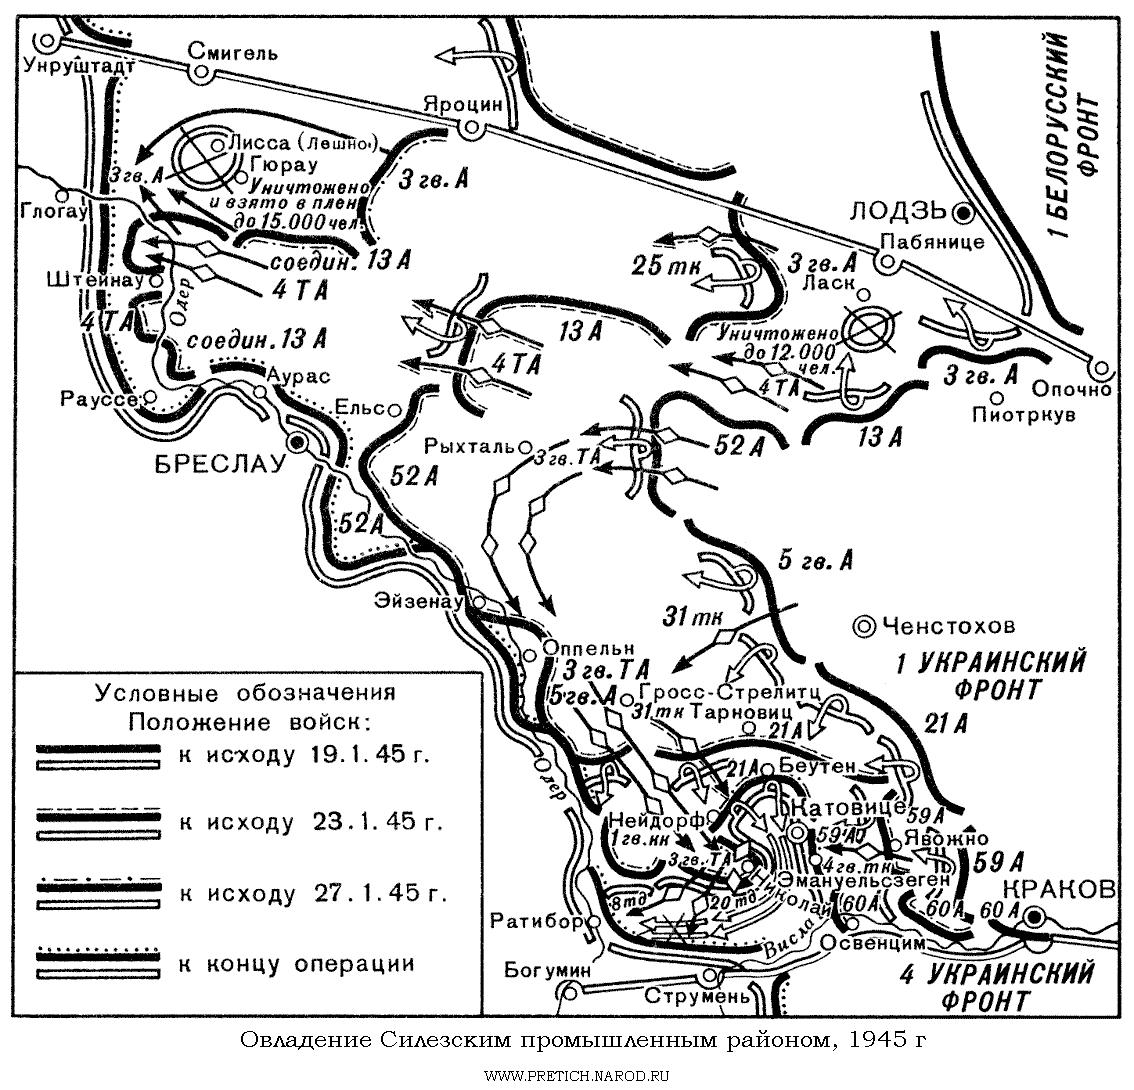 Карта - овладение Силезским промышленным районом, 1945 год